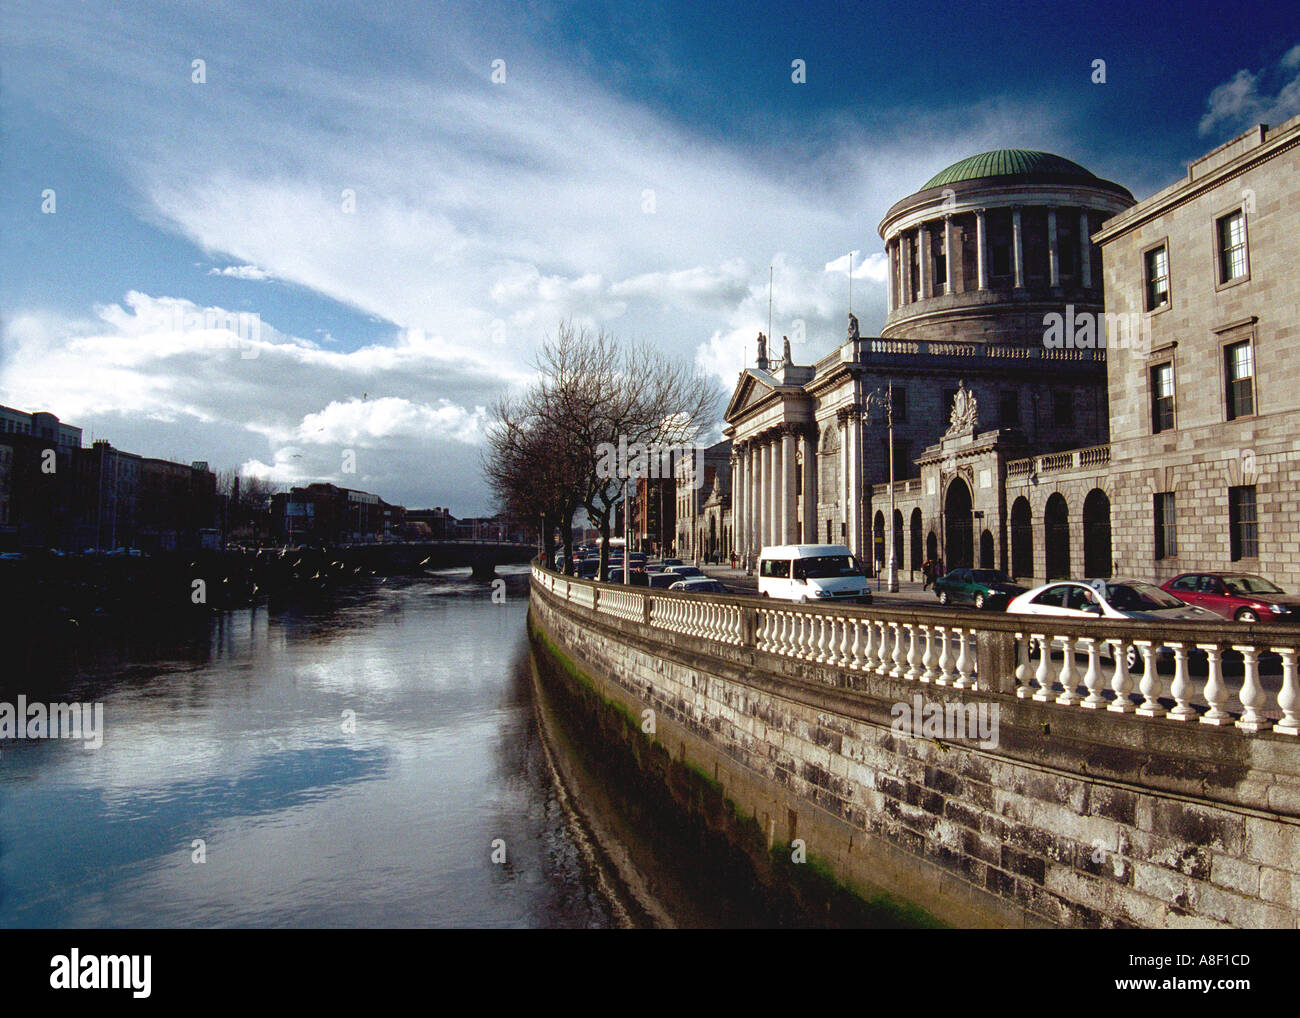 Four Courts Dublin Ireland Stock Photo